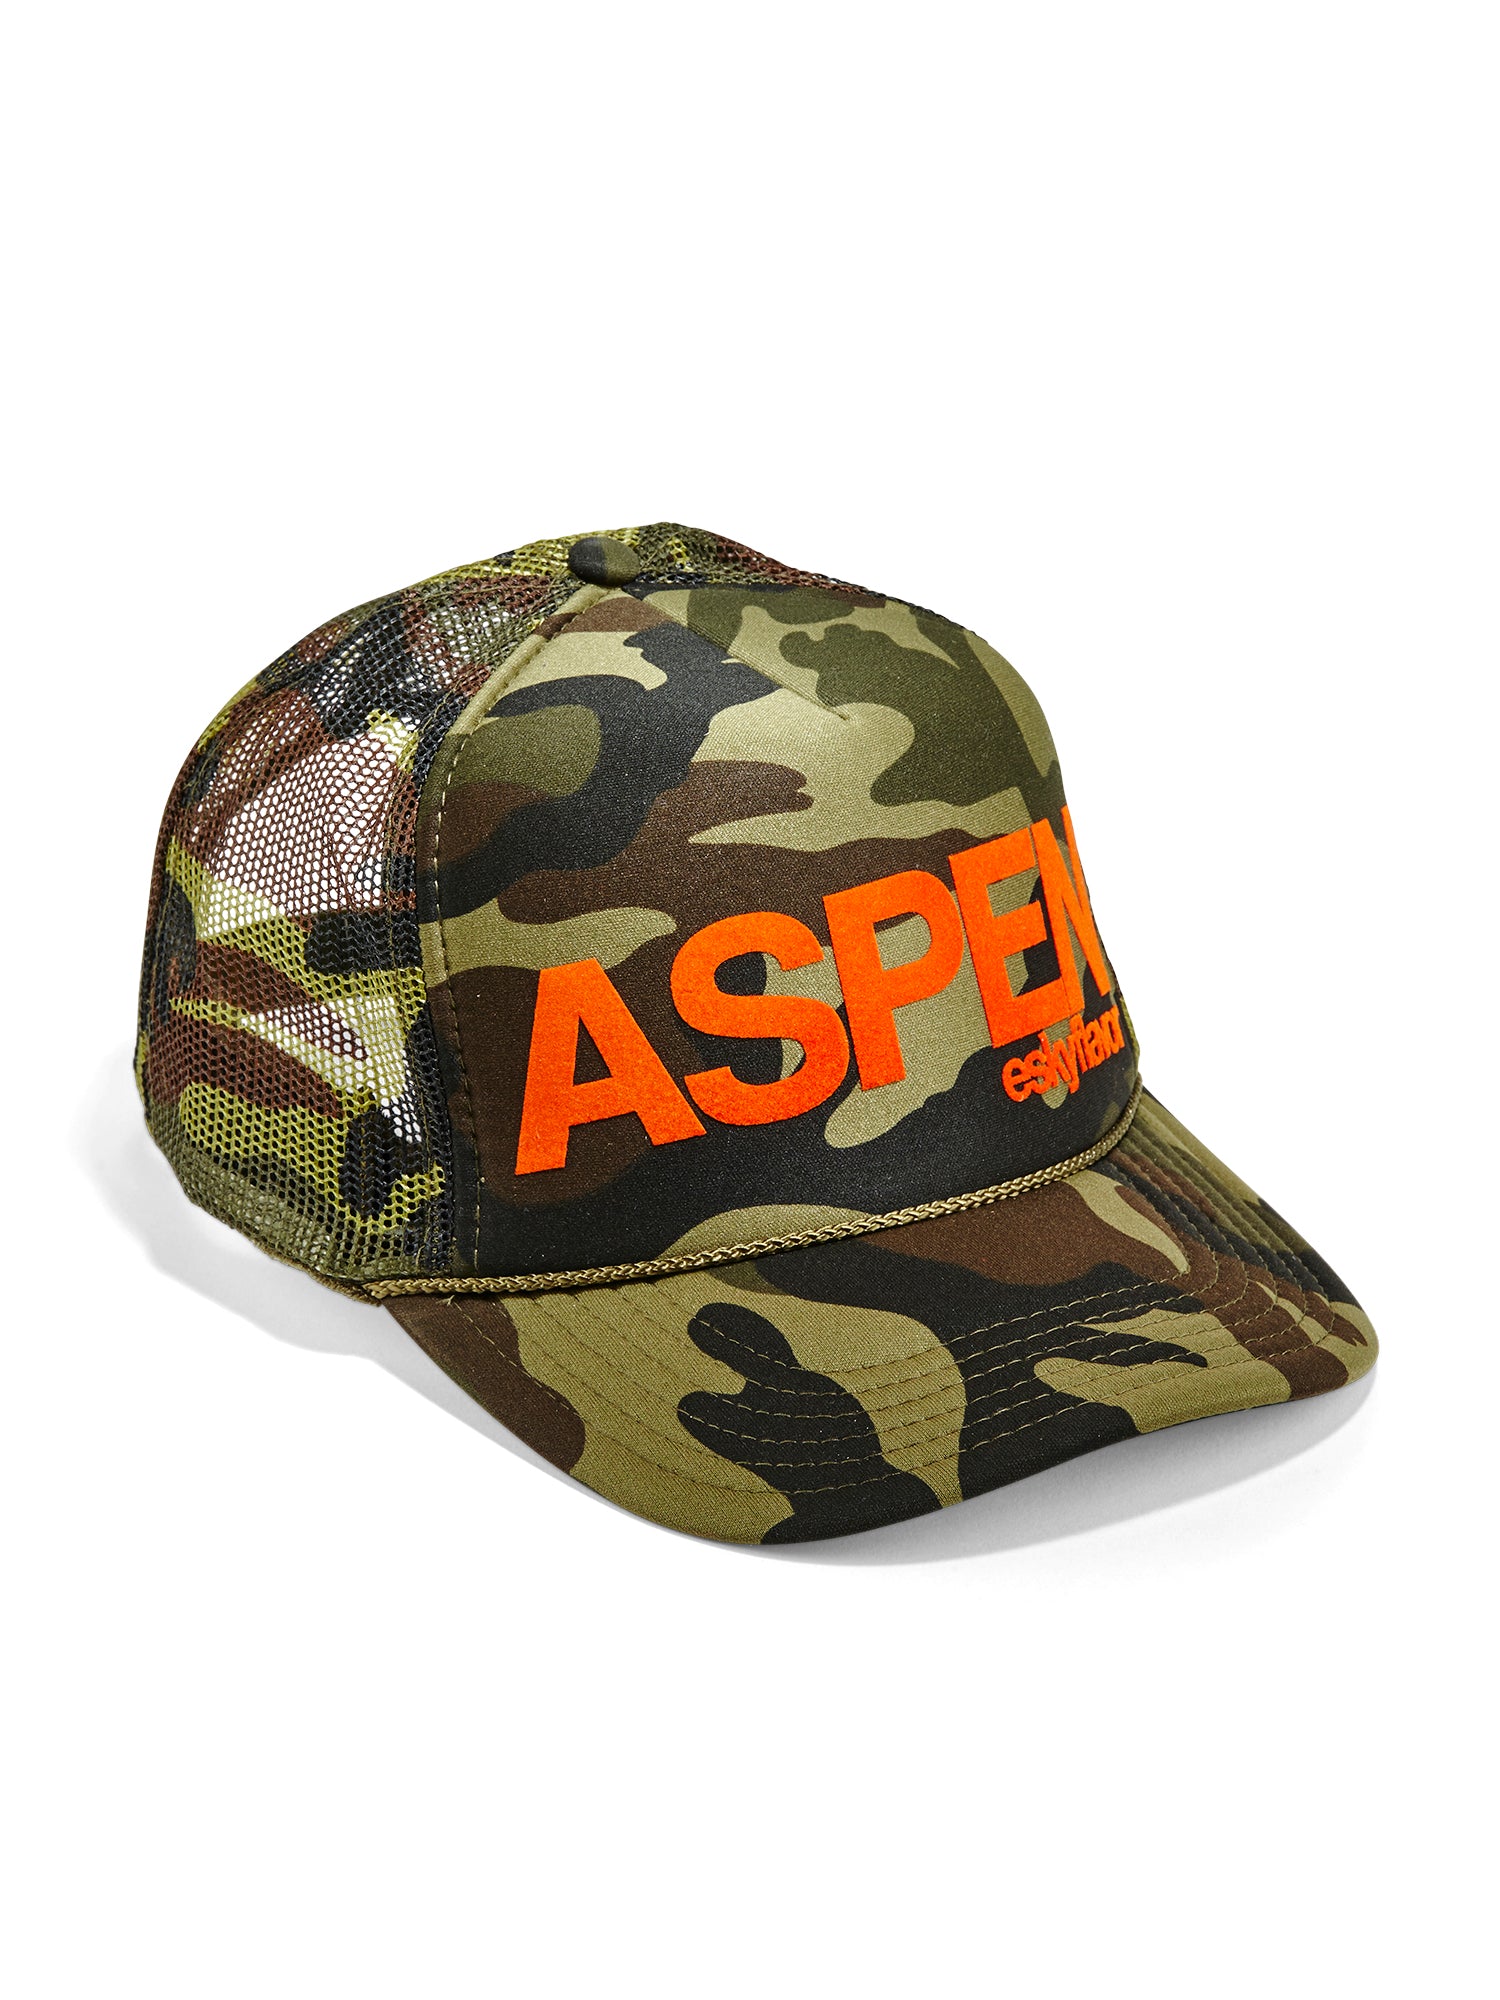 Aspen Trucker Hat